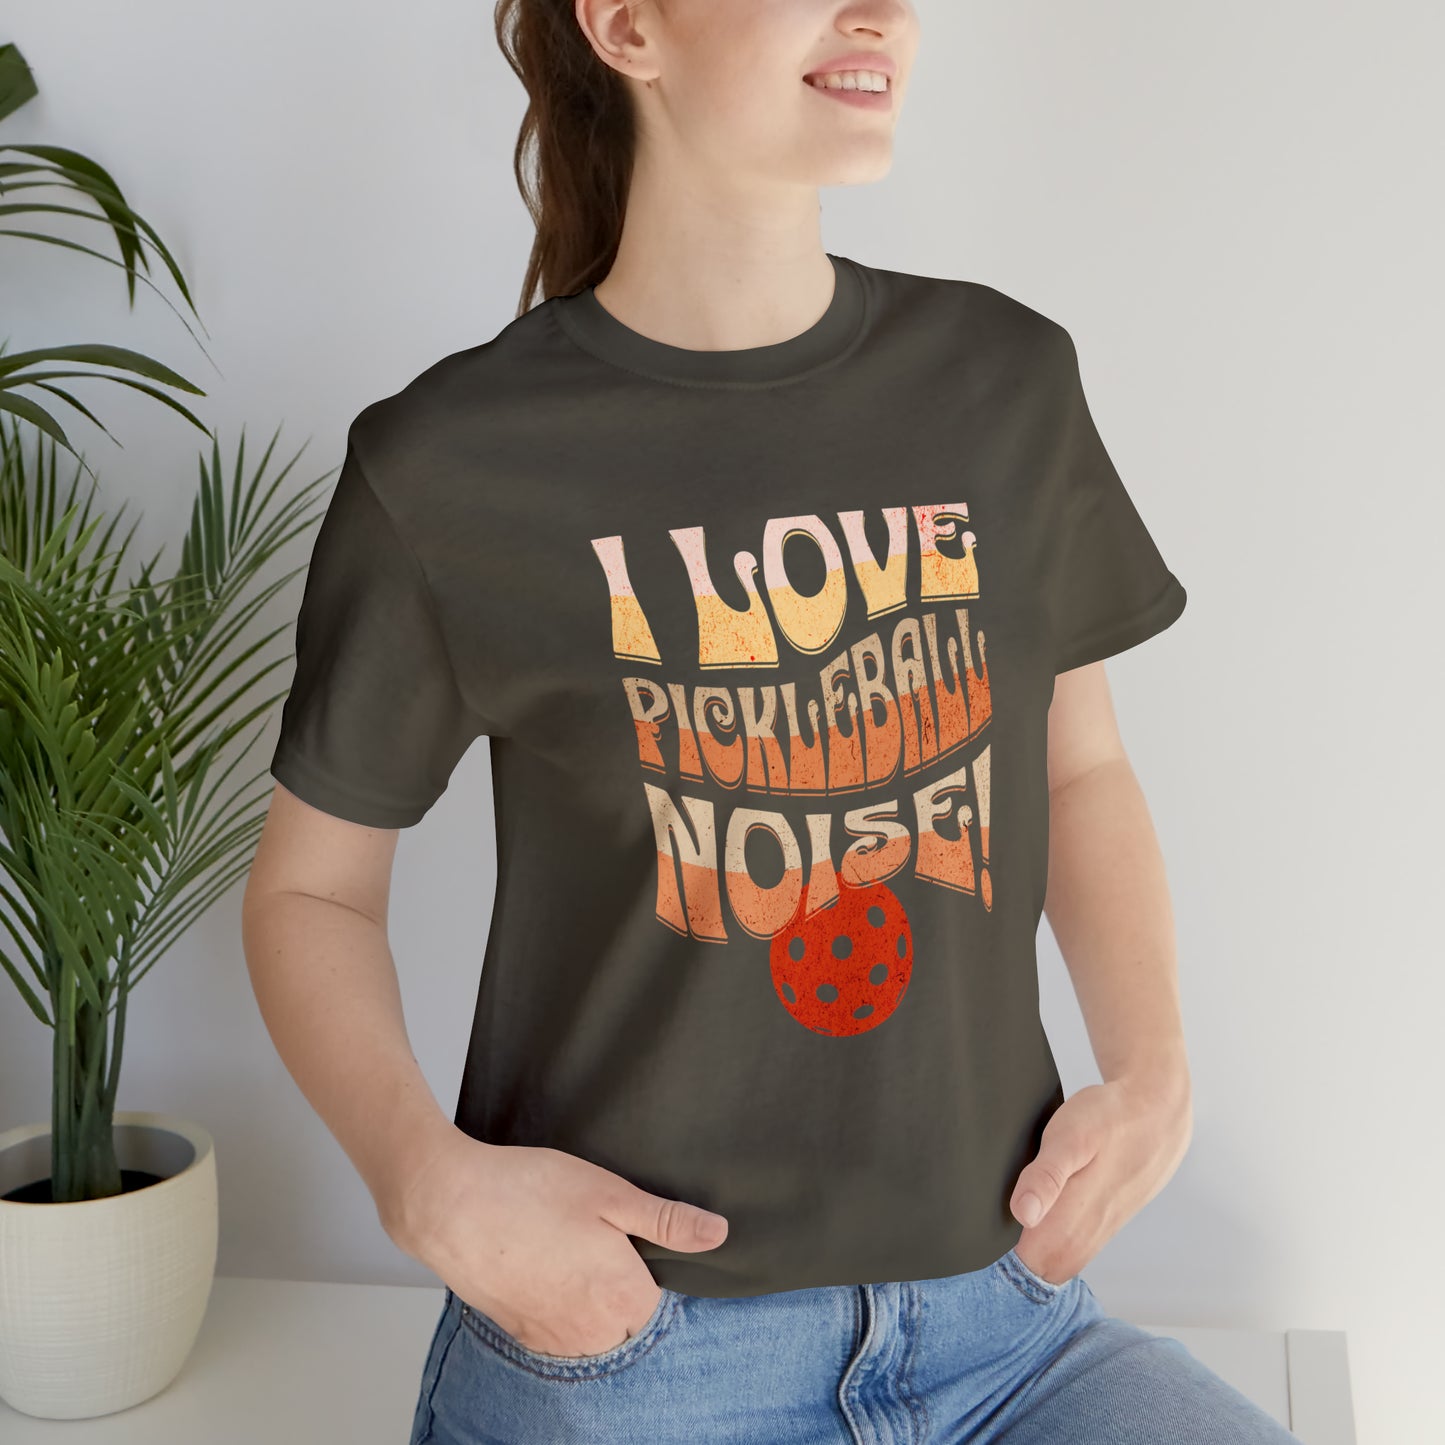 I Love Pickleball Noise T-Shirt